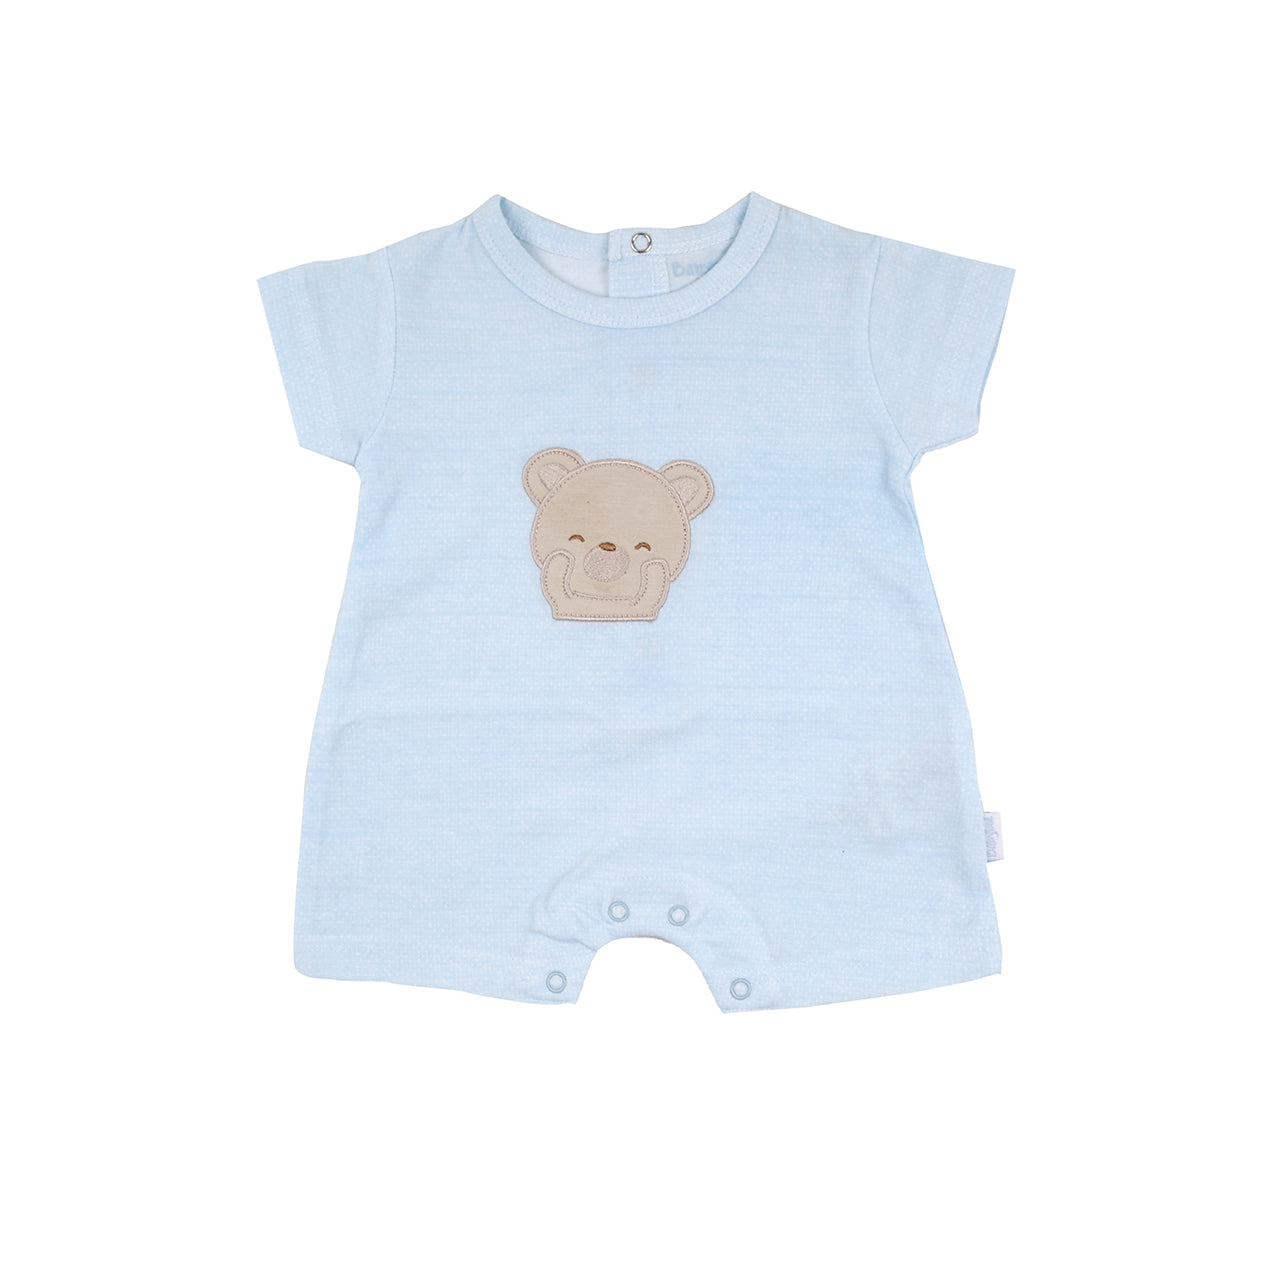 Baby boys pale blue teddy bear romper - Adora Childrenswear